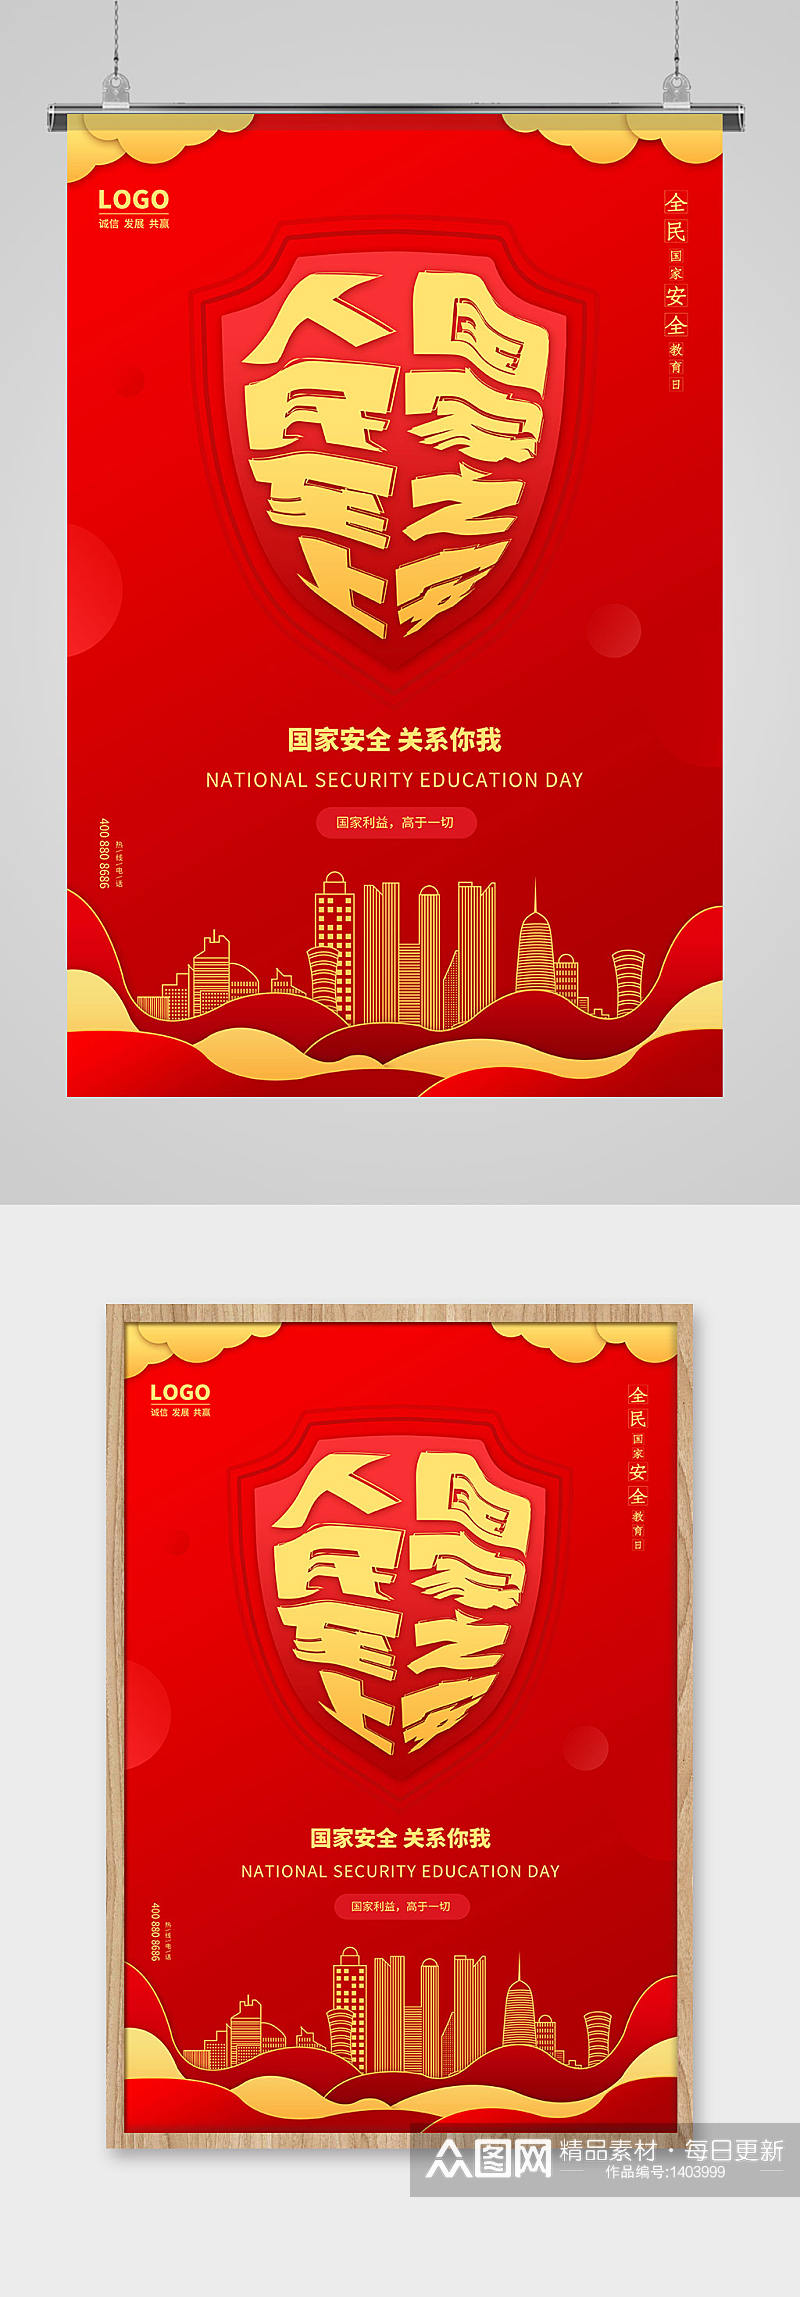 红色简约全民国家安全教育日节日海报设计素材